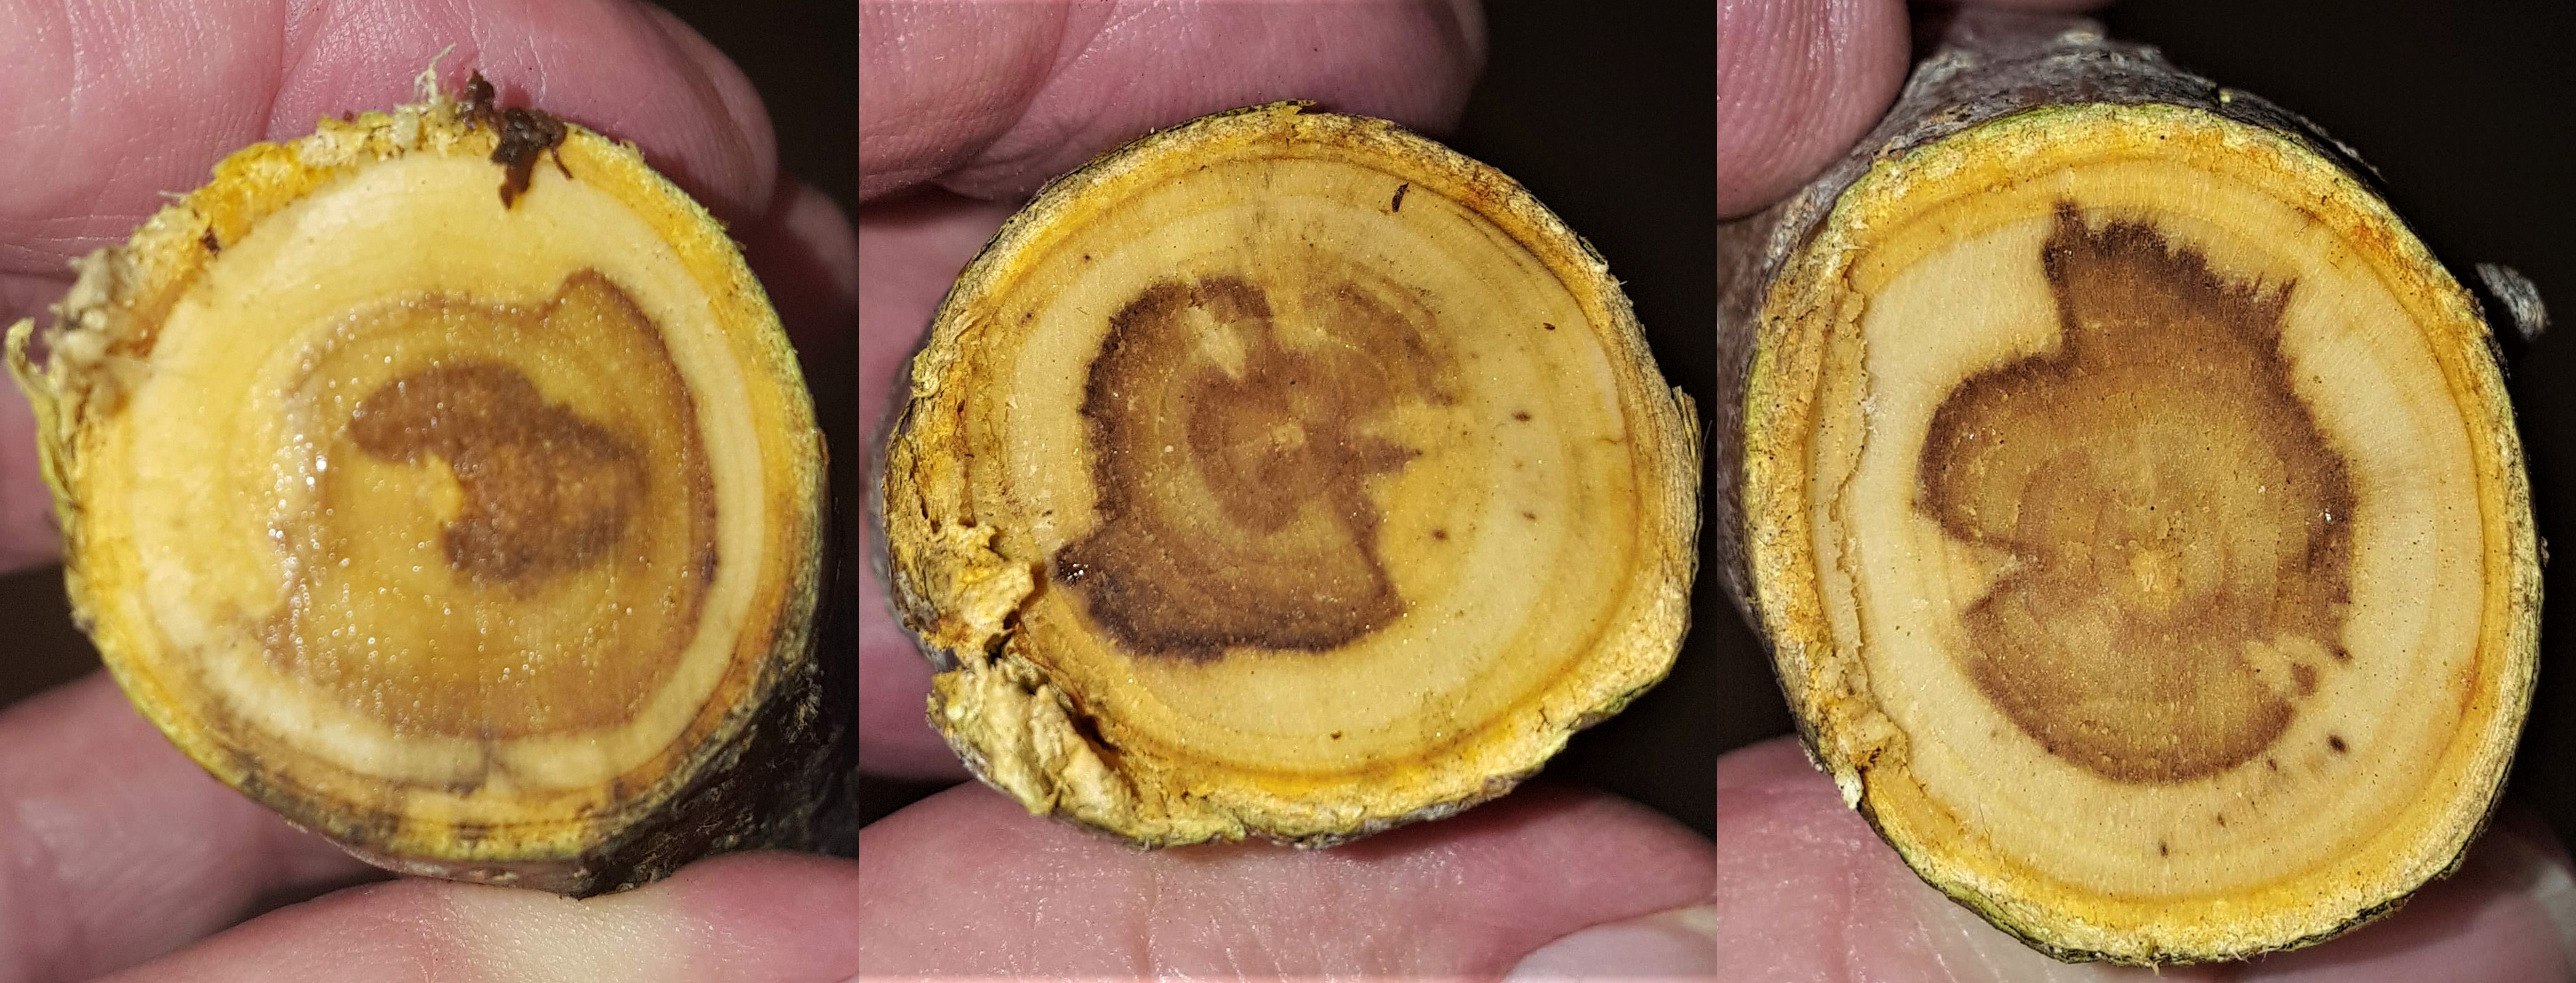 Internal brown wood in apples